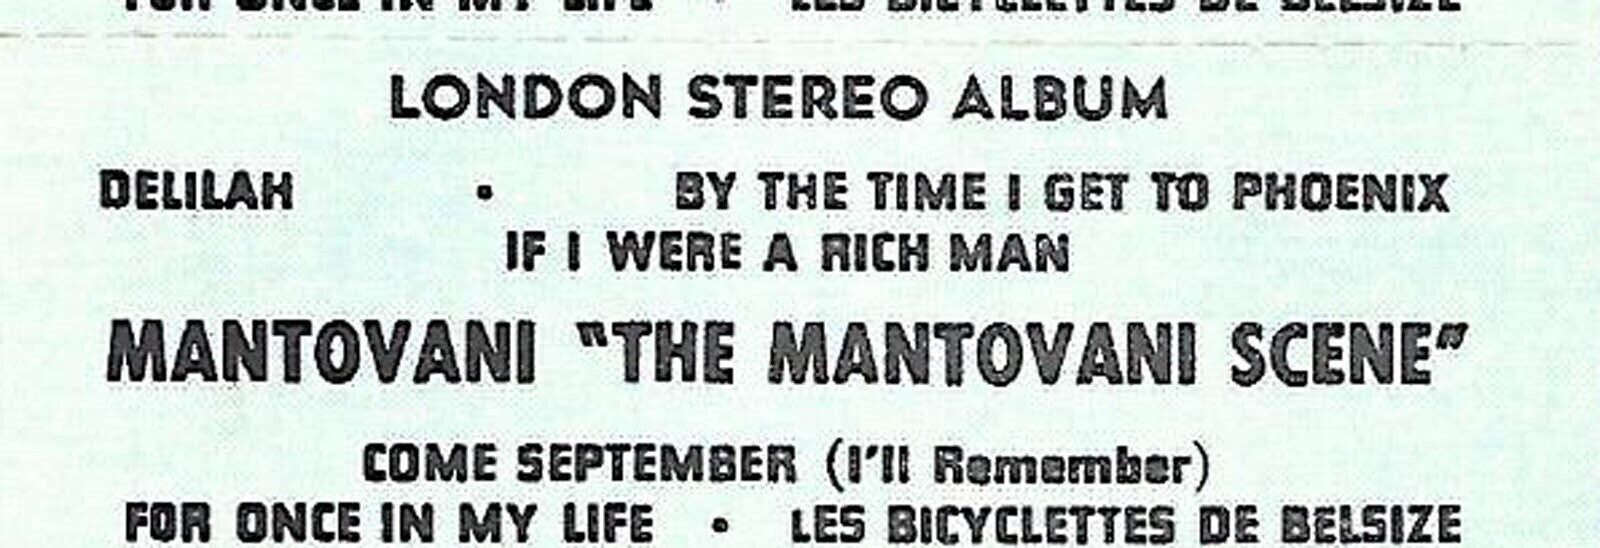 Mantovani-The Mantovani Scene, Delilah/By The Time I Get, Jukebox Label 33 RPM